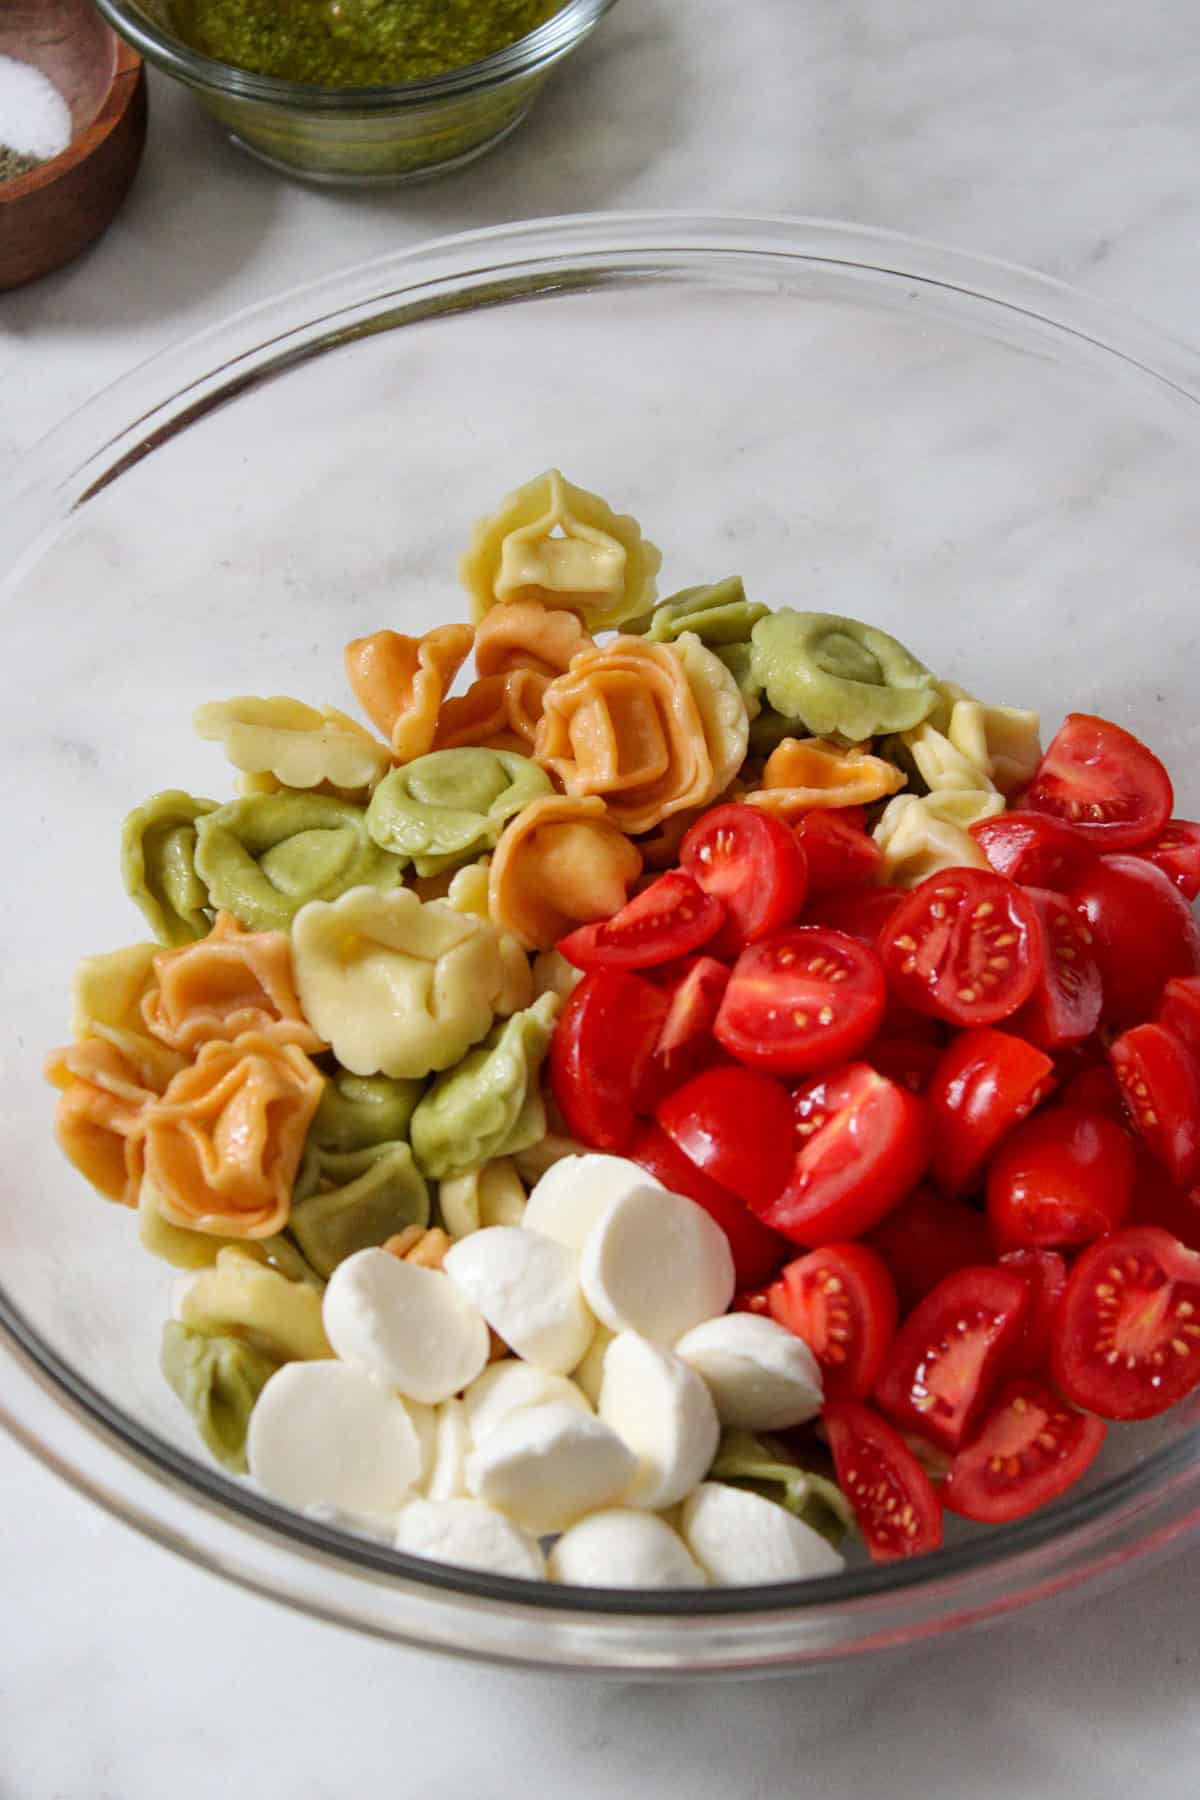 multi-colored tortellini, fresh cherry tomatoes and mozzarella balls in a glass bowl